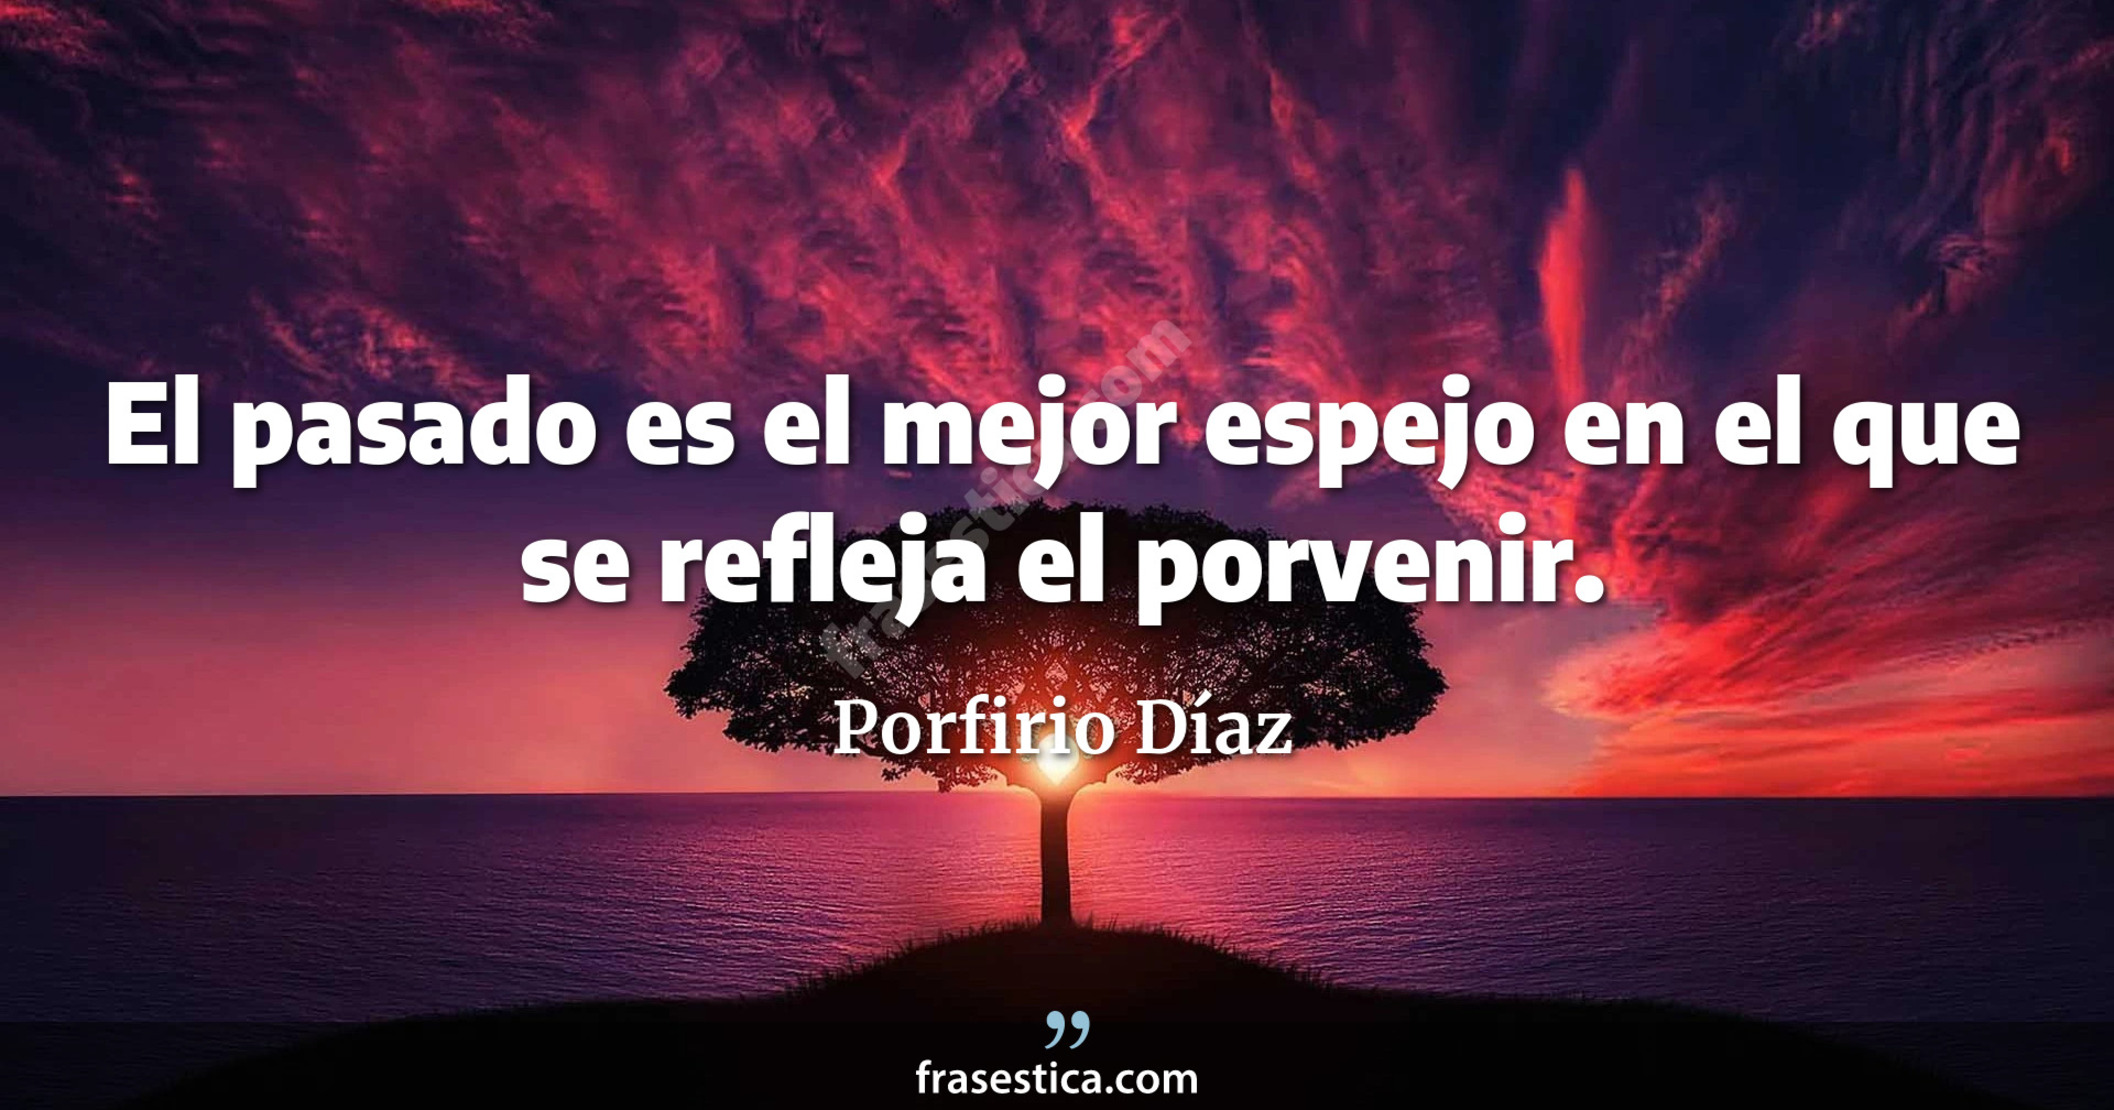 El pasado es el mejor espejo en el que se refleja el porvenir. - Porfirio Díaz